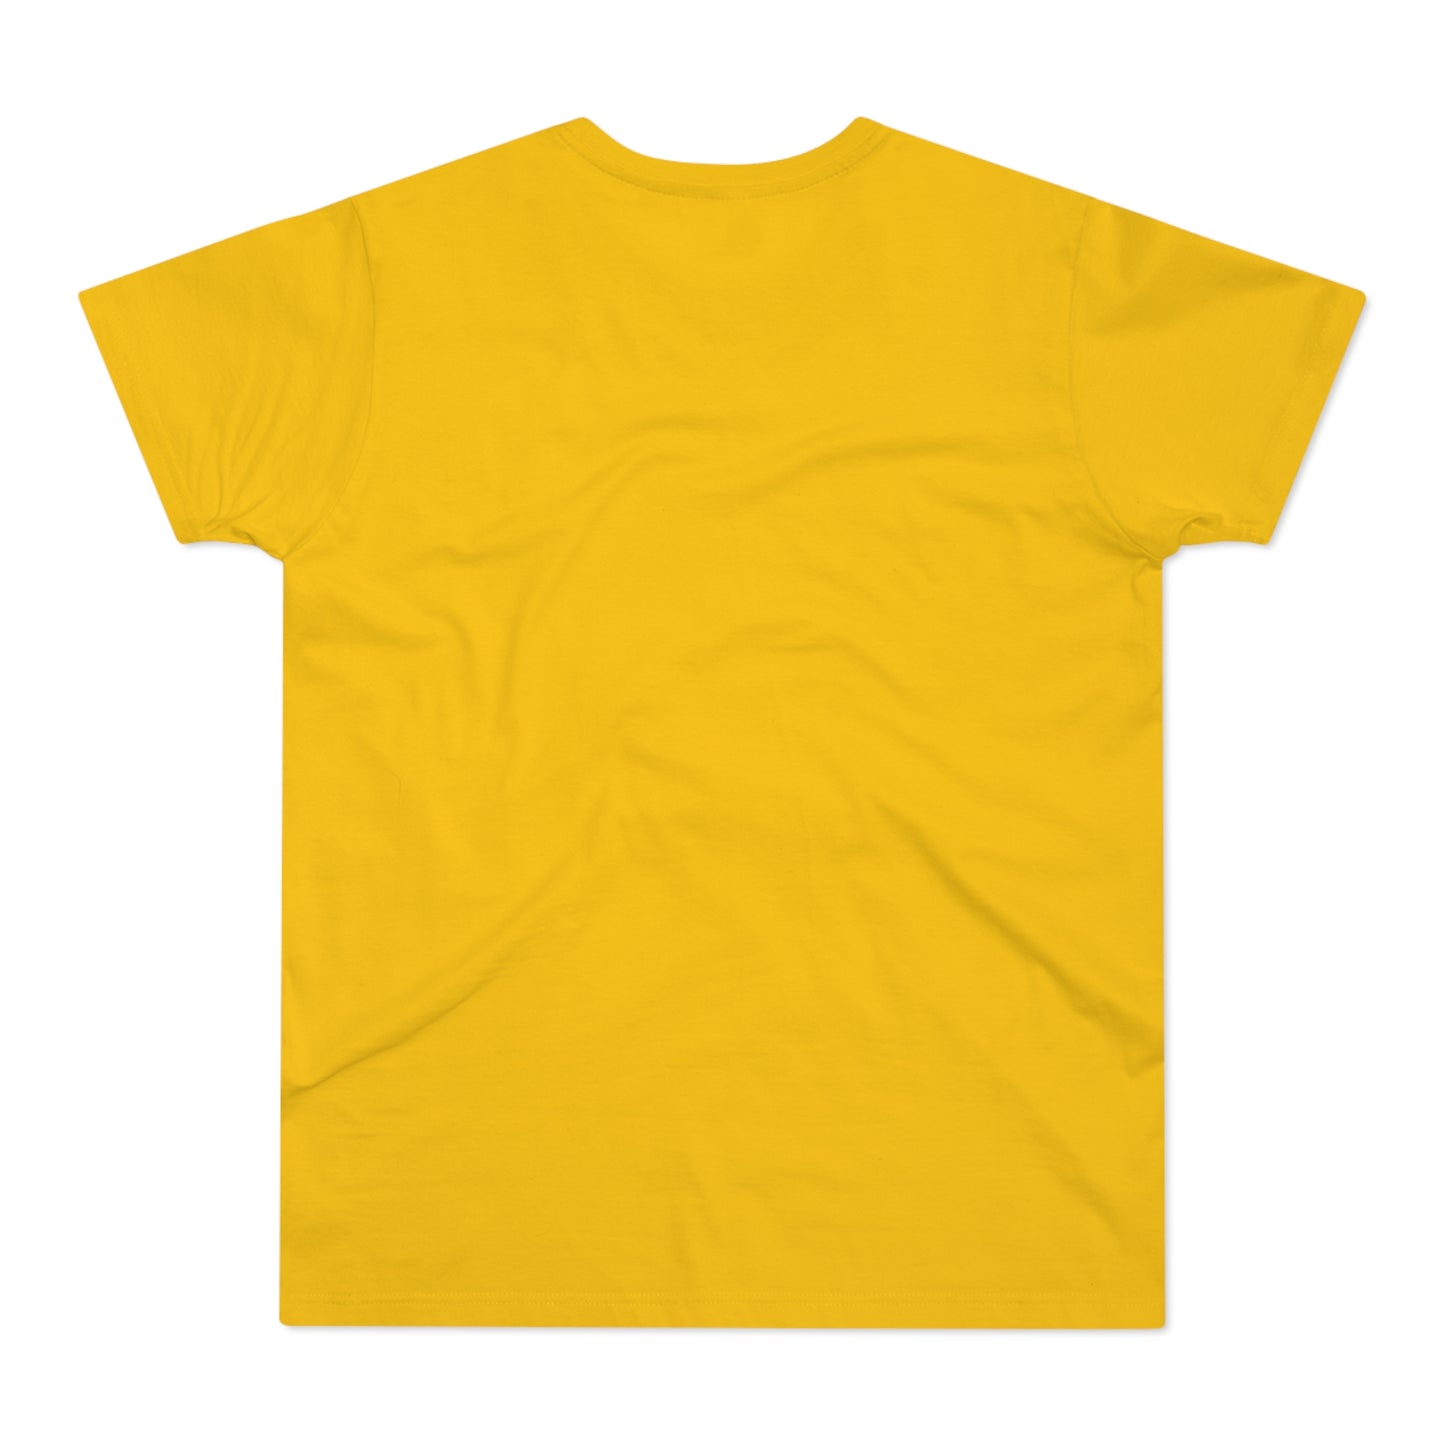 Dragon Pulp Games Single Jersey T-Shirt (Männer)